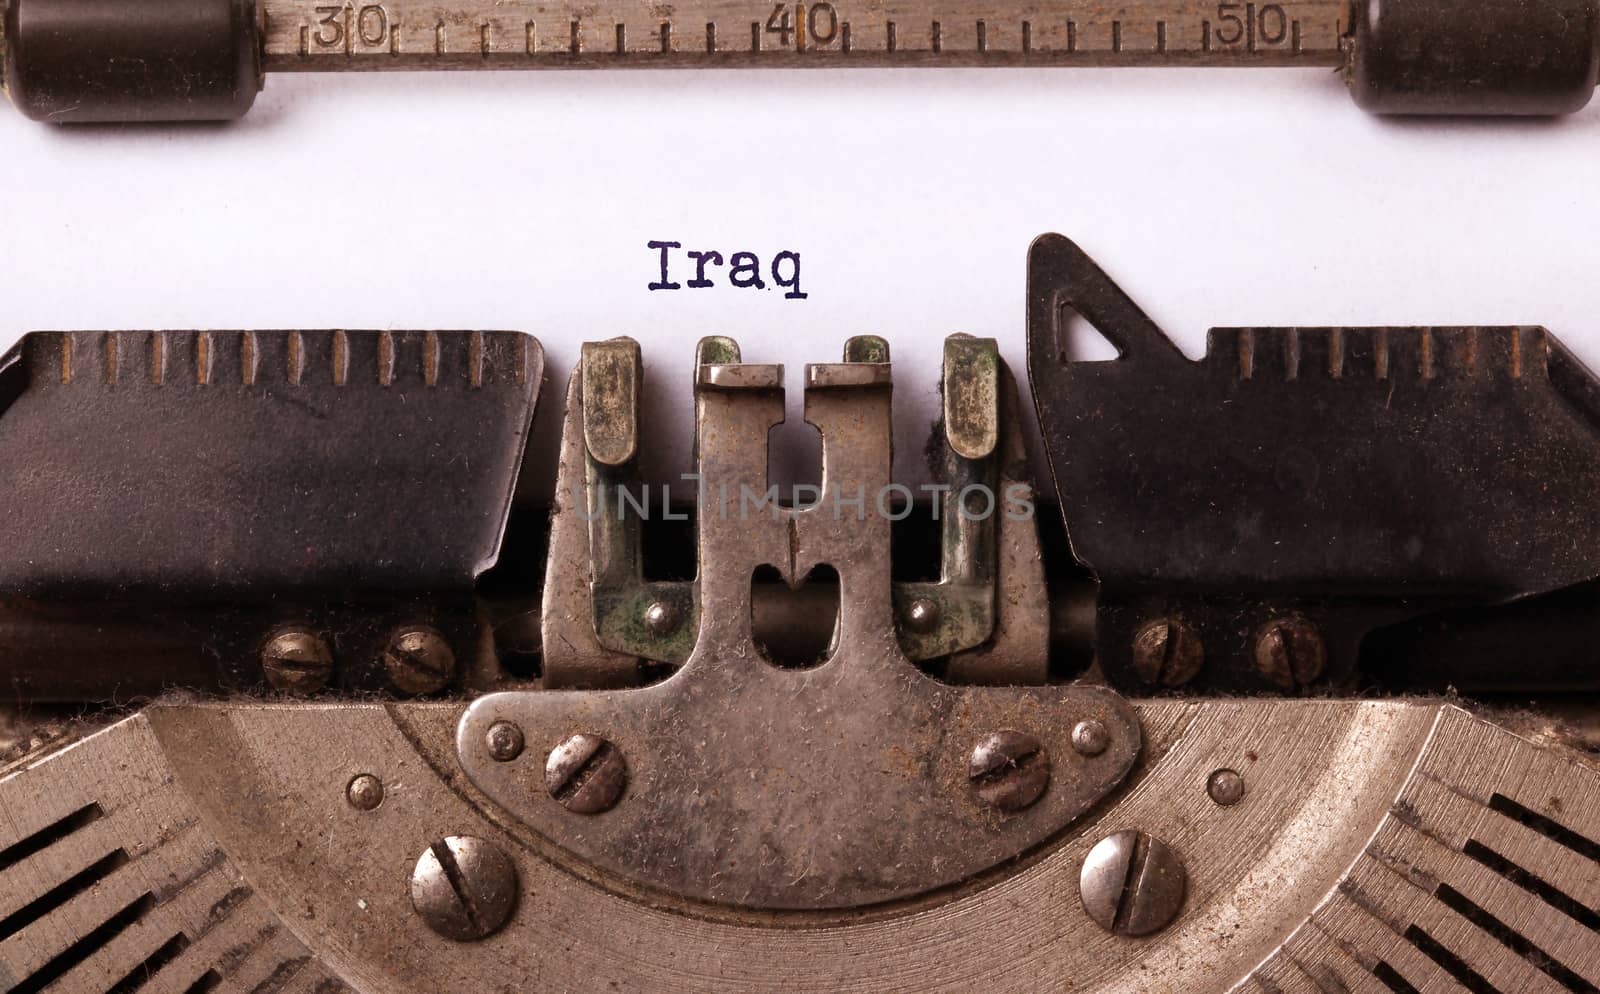 Old typewriter - Iraq by michaklootwijk